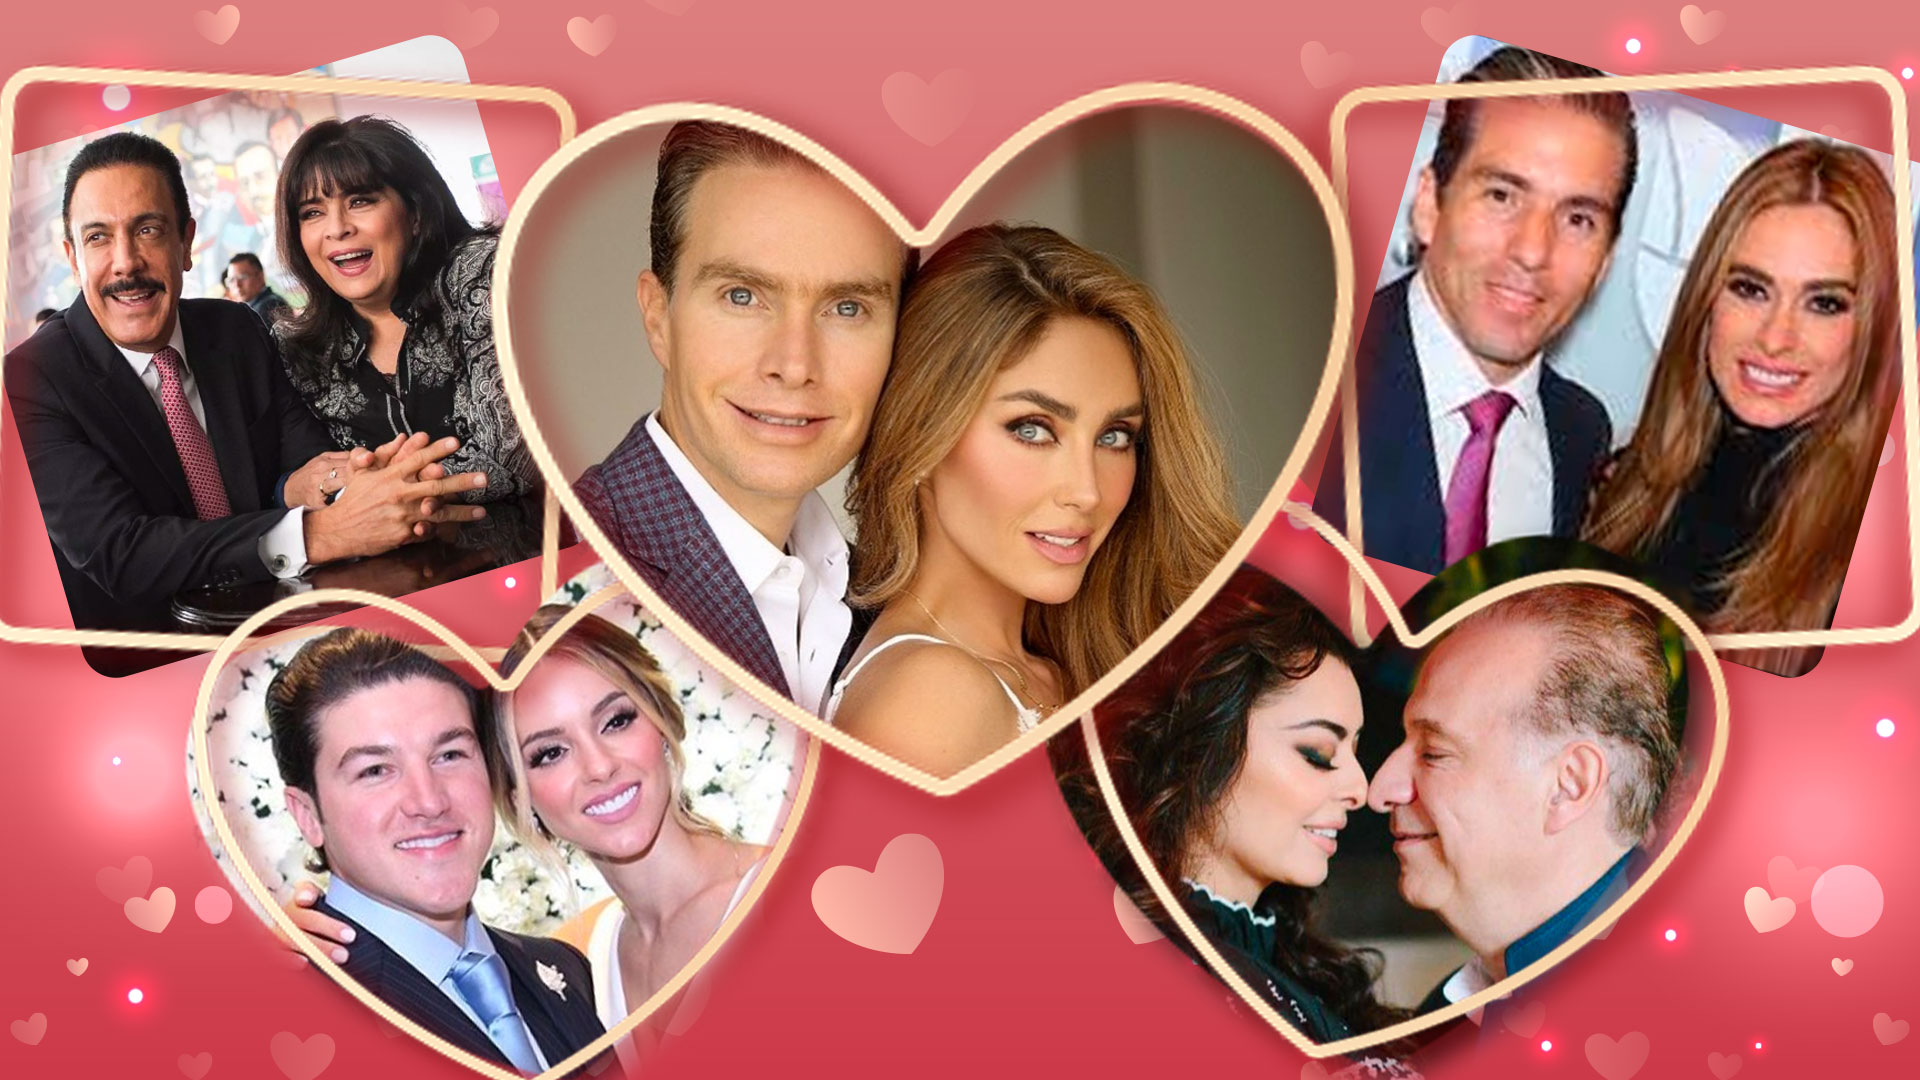 Ellos son algunos de los políticos que se han casado con famosas 
(Foto: Infobae México)